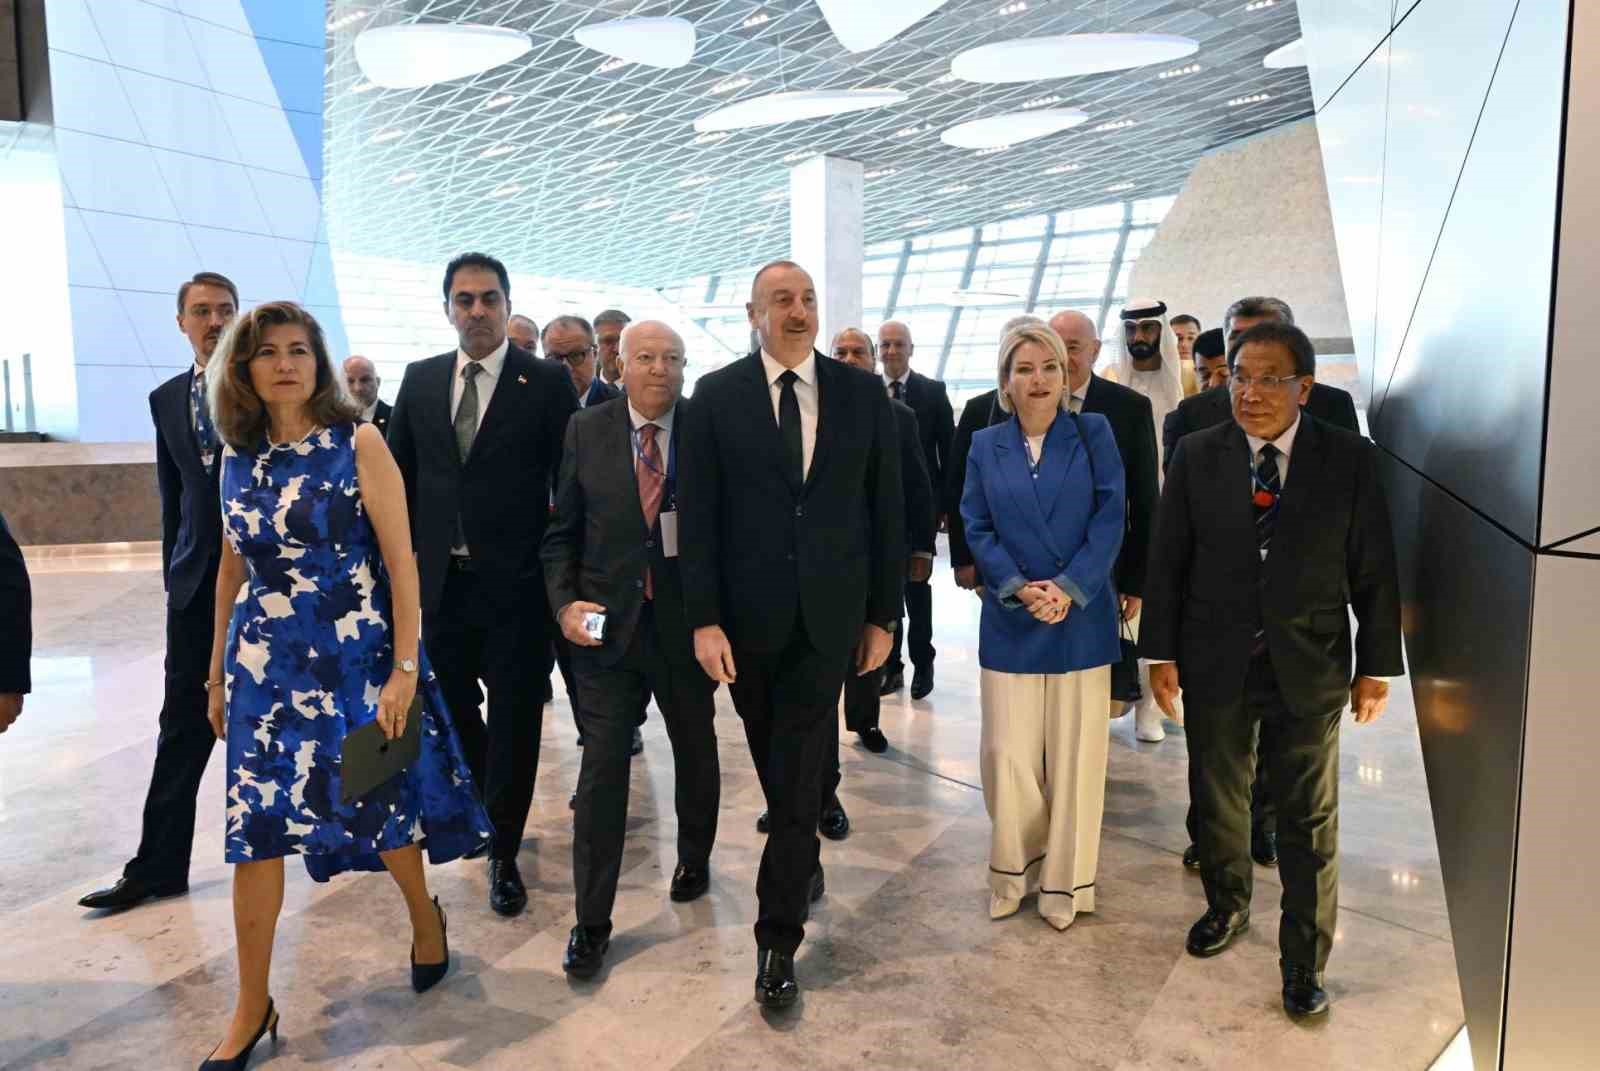 azerbaycan cumhurbaşkanı aliyev: “ermenistan ile barışa doğru ilerliyoruz”